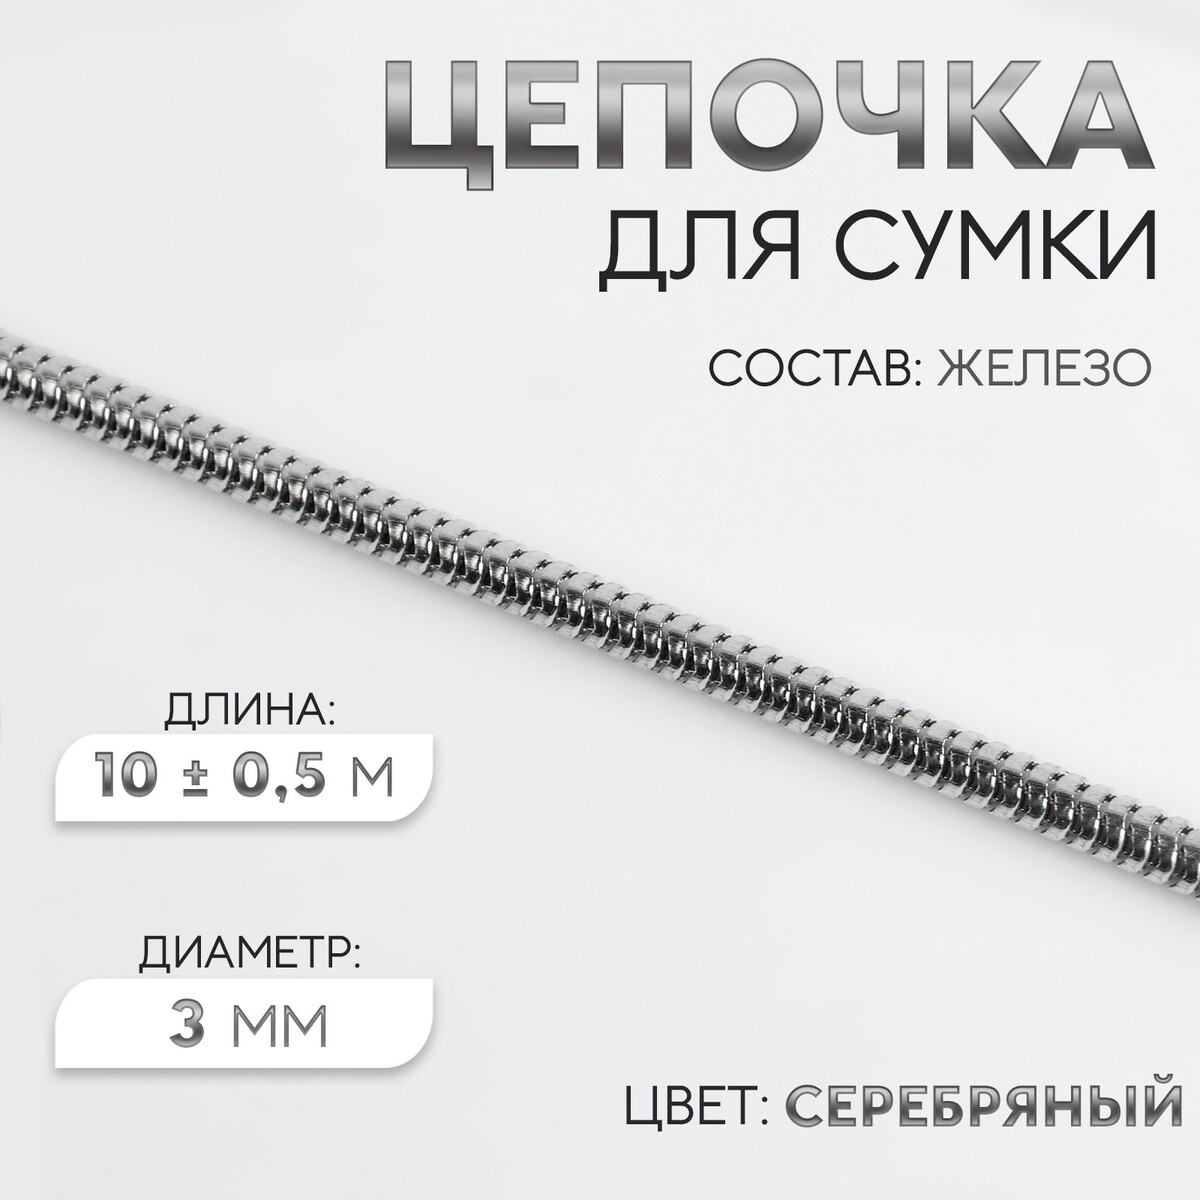 Цепочка для сумки, железная, d = 3 мм, 10 ± 0,5 м, цвет серебряный цепочка для сумки железная 7 × 5 мм 10 ± 0 5 м серебряный